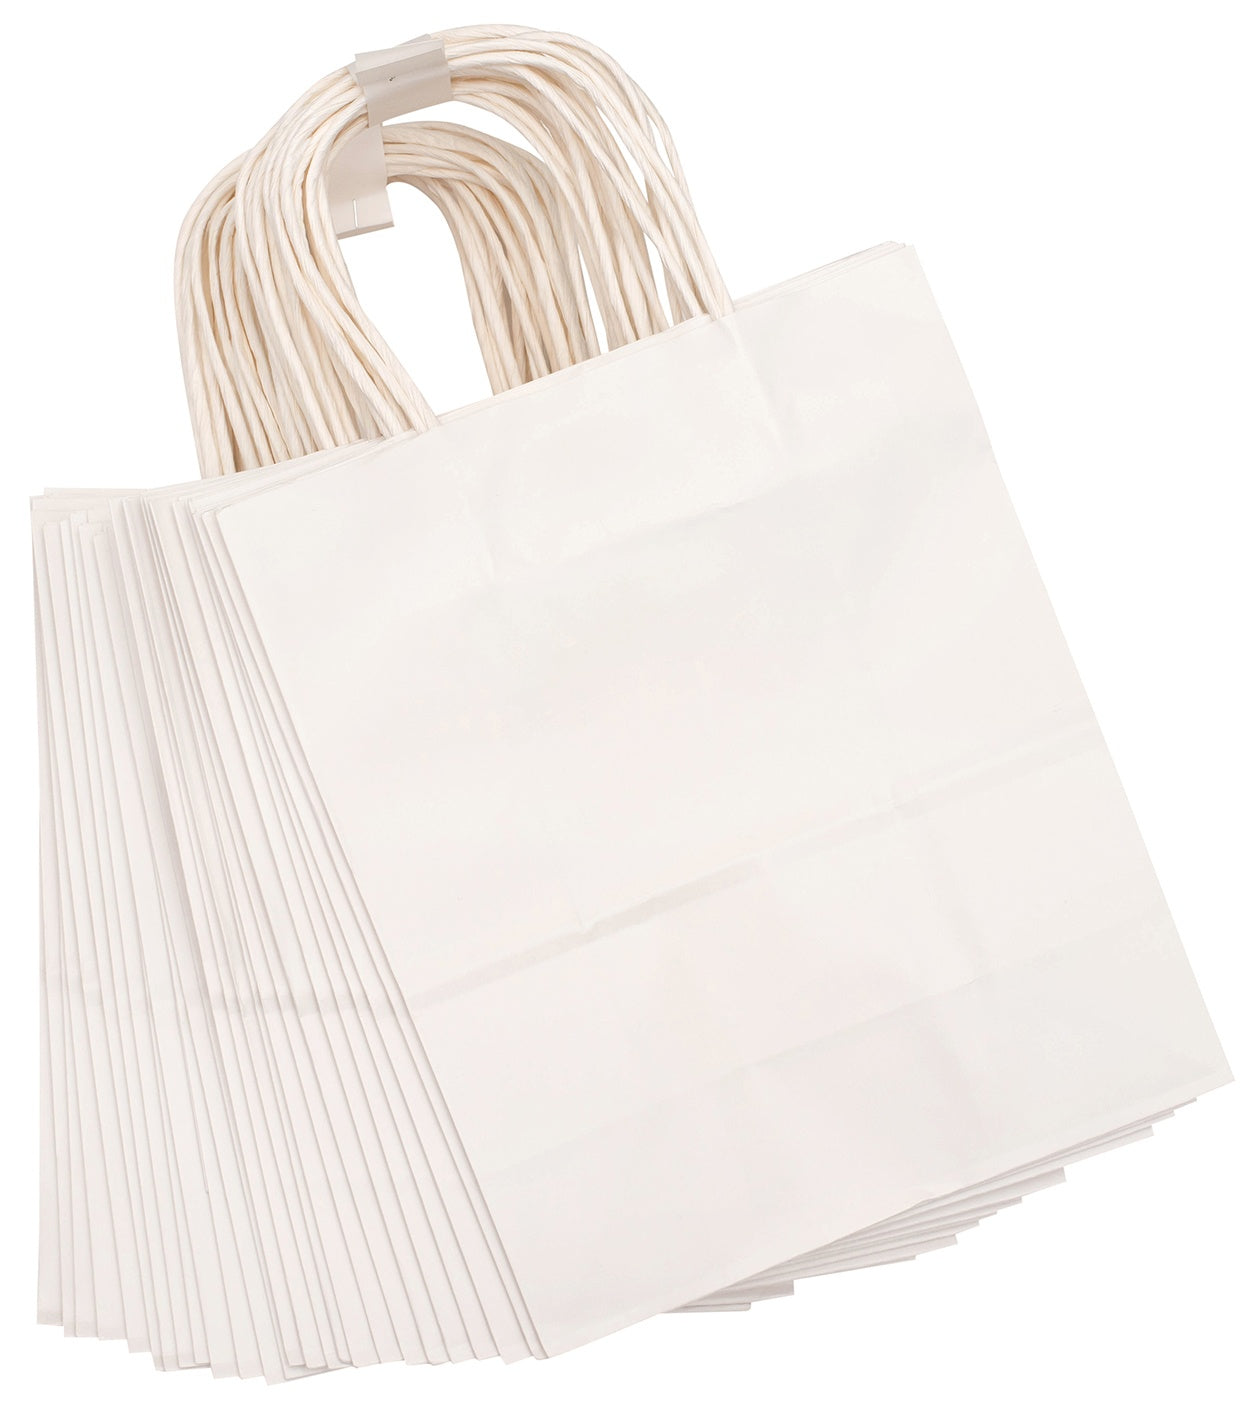 Hello Hobby Large Bags 2/Pkg-White